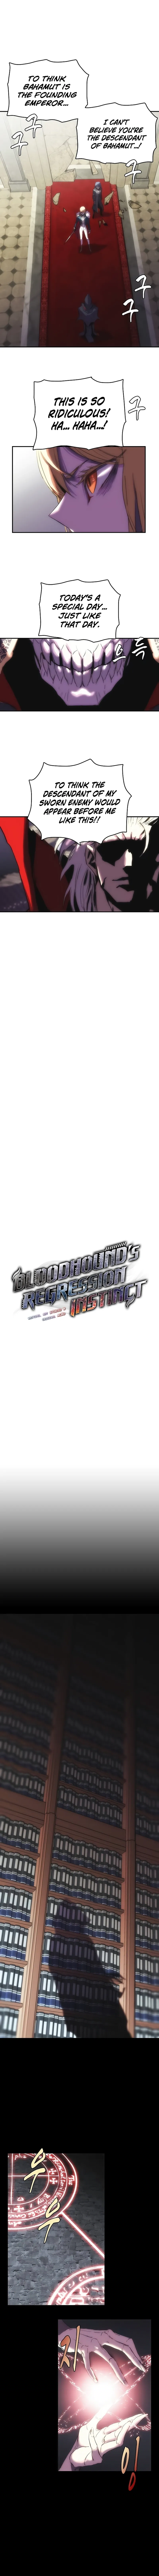 Bloodhound’s Regression Instinct Chapter 25 page 2